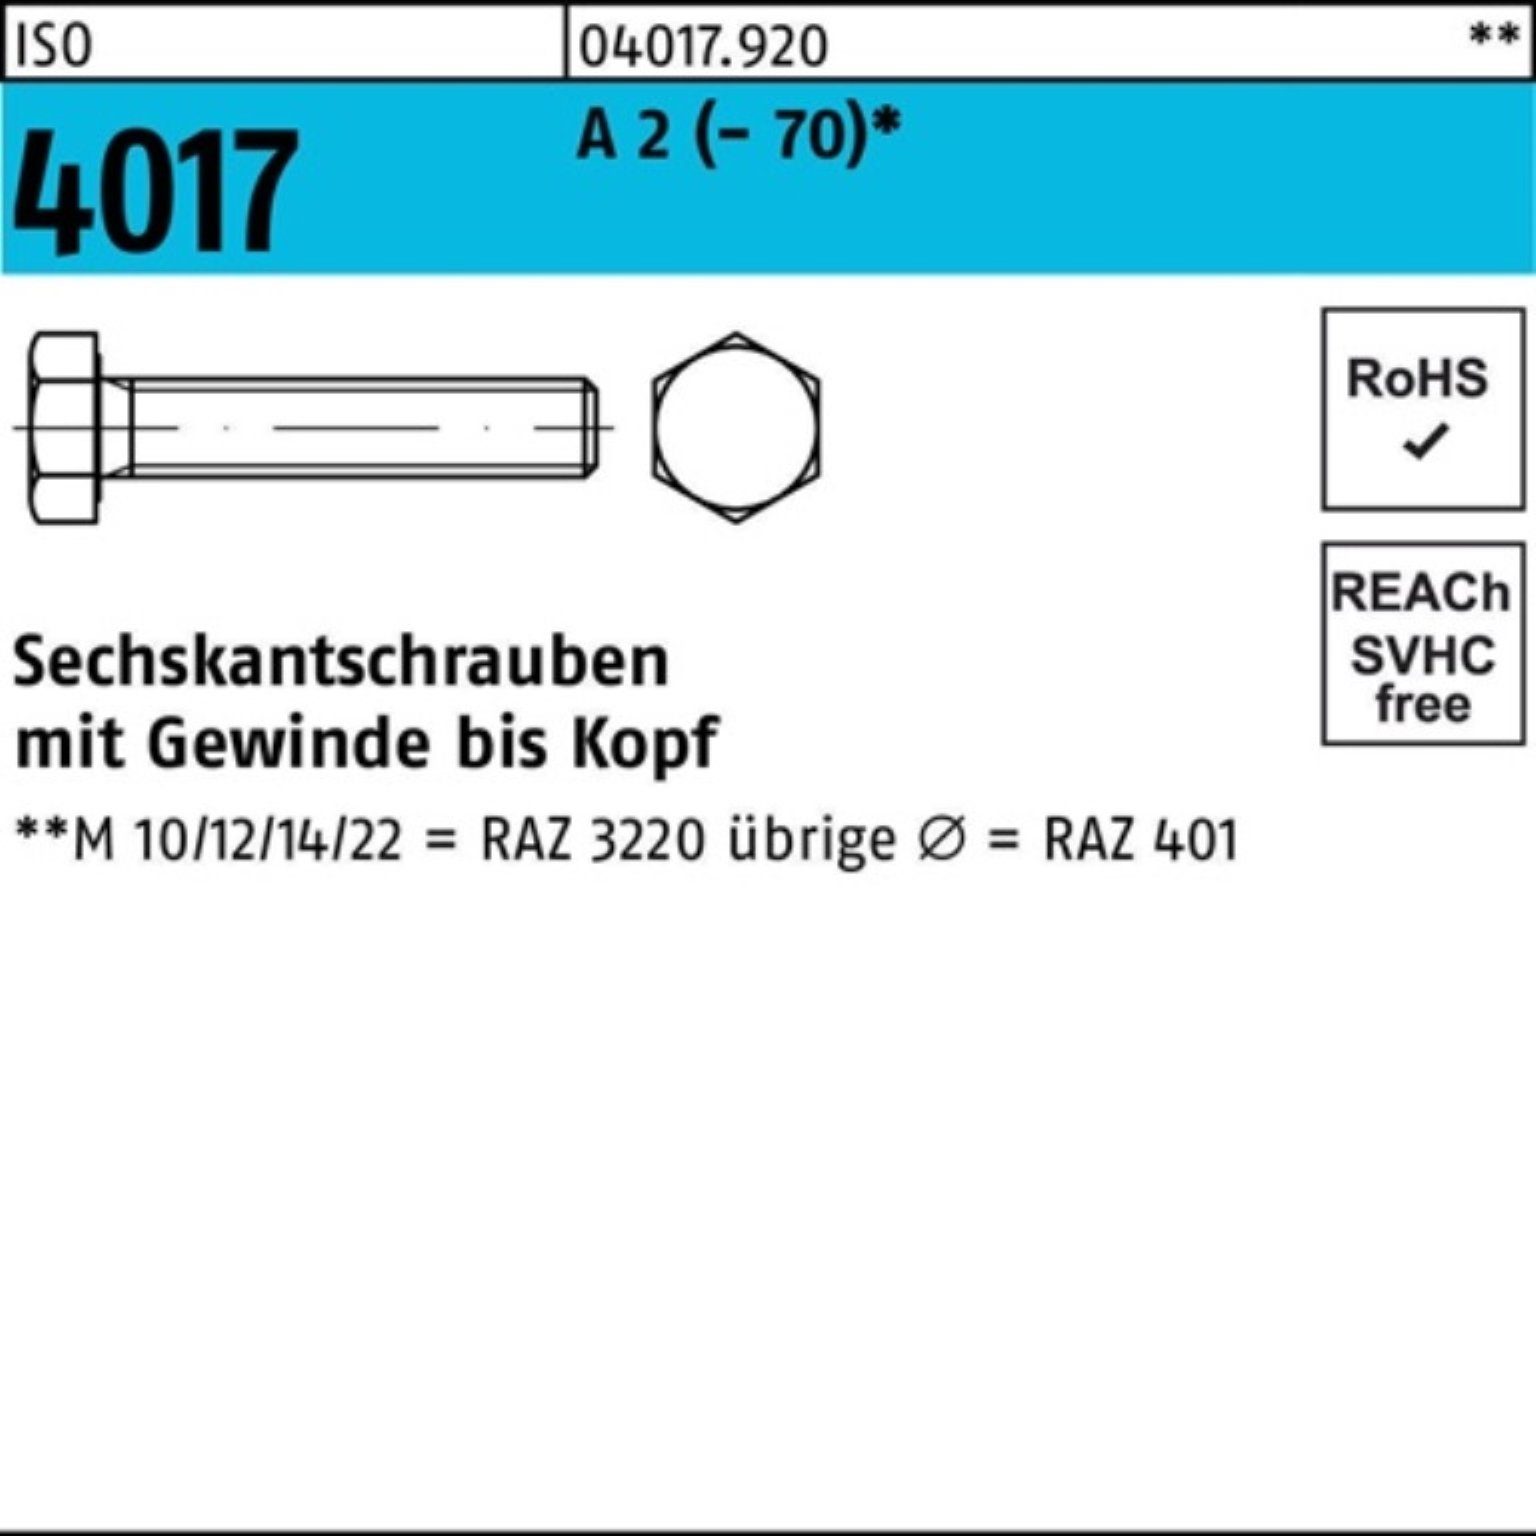 A 200 Bufab (70) Pack 2 ISO Stück M8x 200er Sechskantschraube VG 45 4017 Sechskantschraube